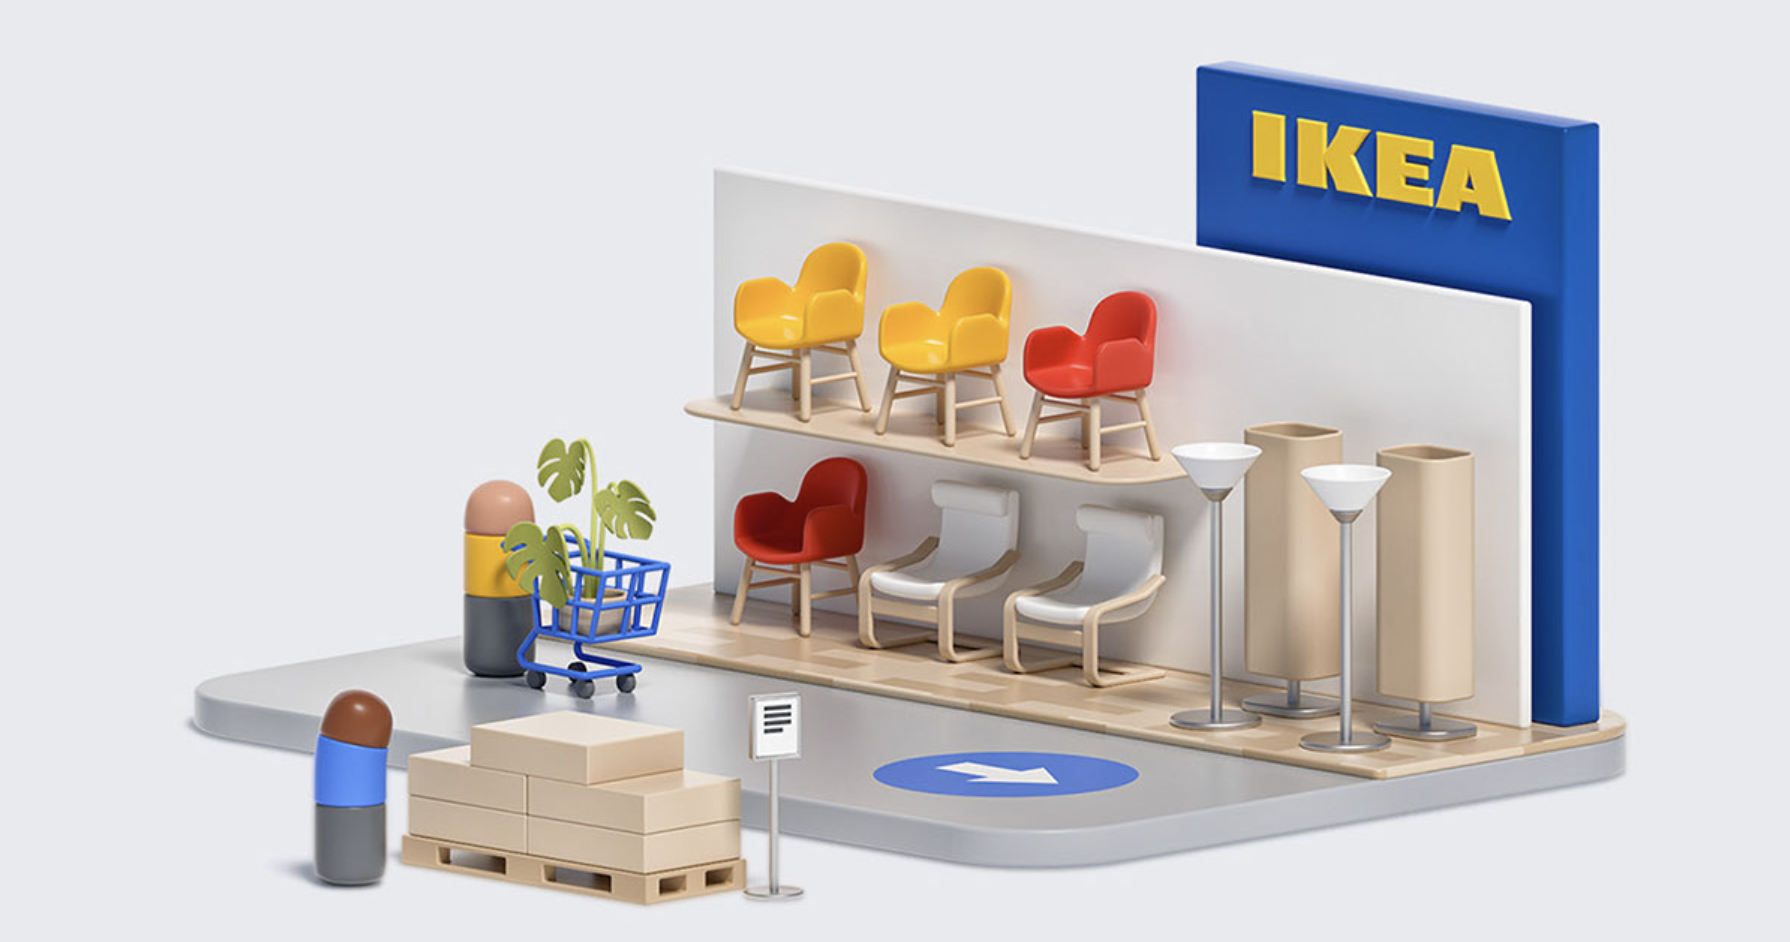 Chiến lược thương hiệu của IKEA, từ nhà nghèo Thụy Điển trở thành tỉ phú Bắc Âu